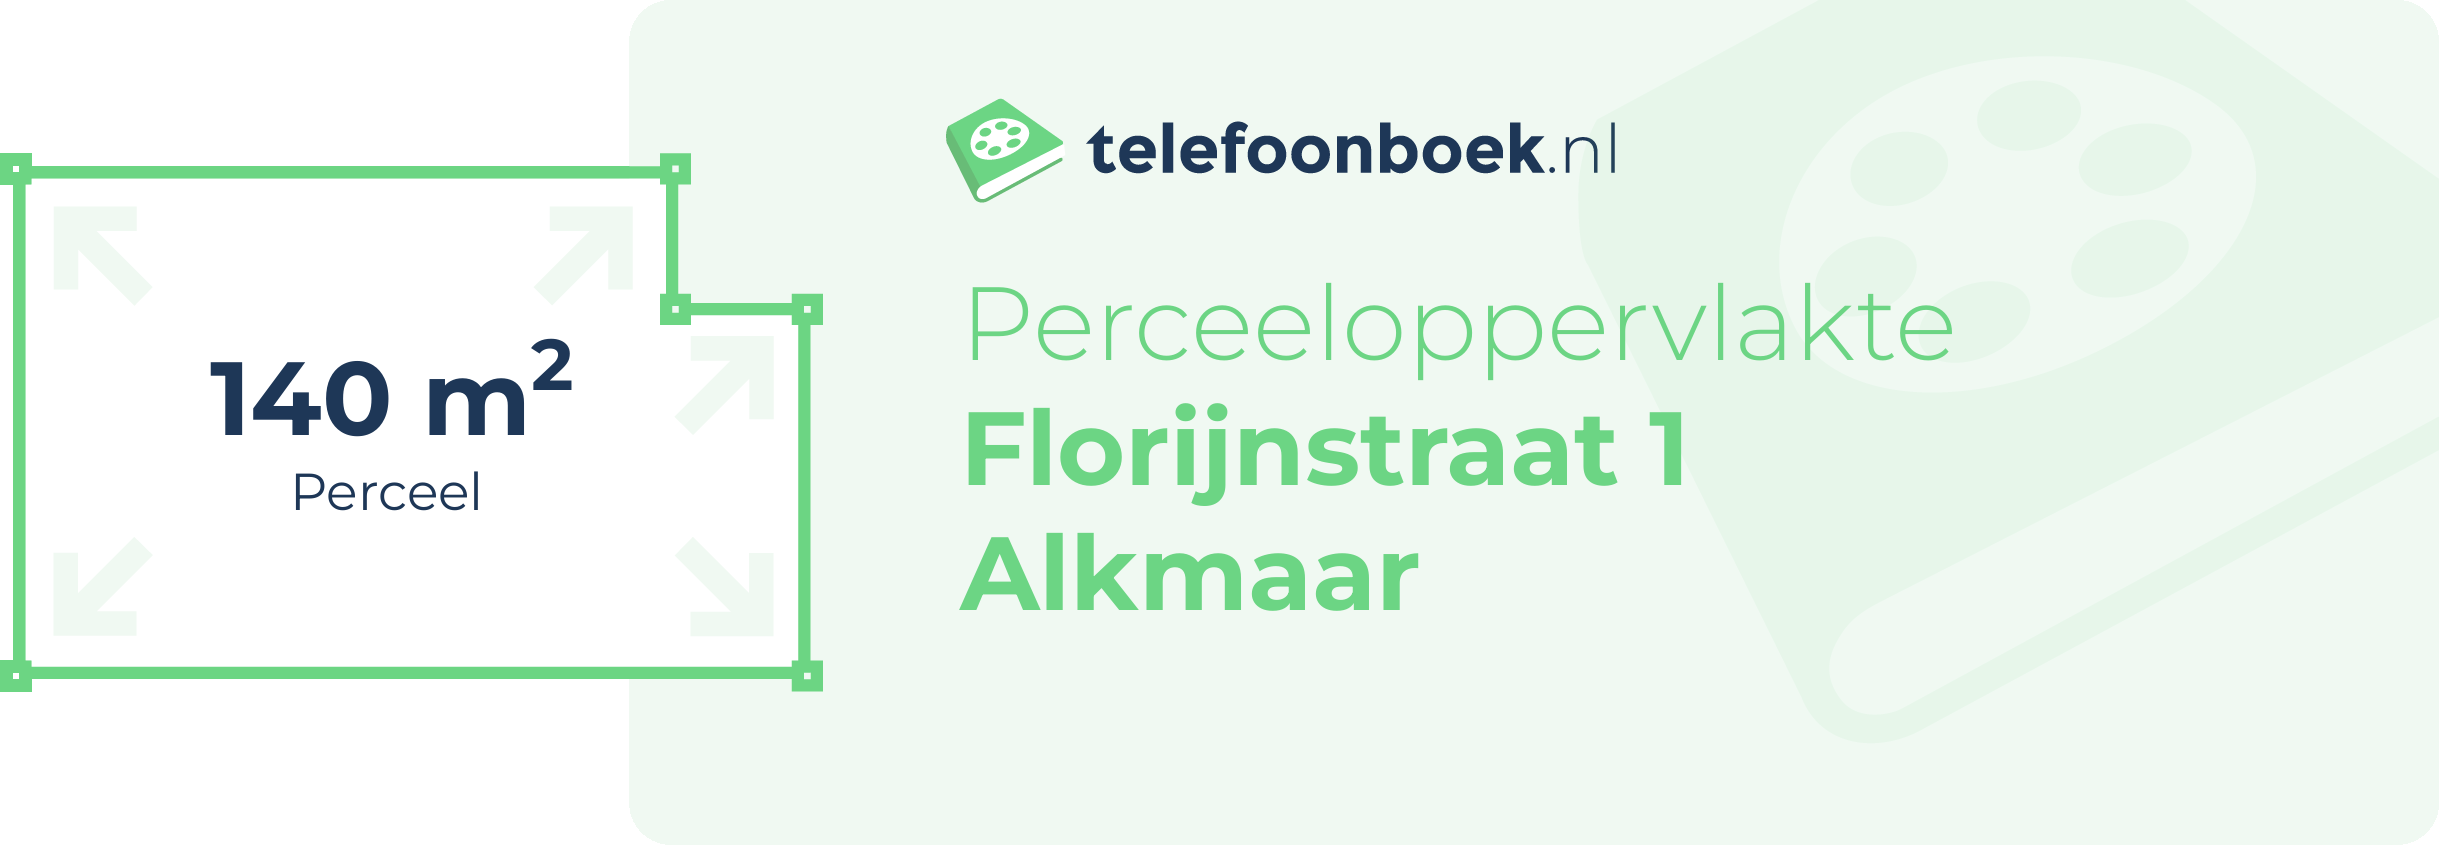 Perceeloppervlakte Florijnstraat 1 Alkmaar